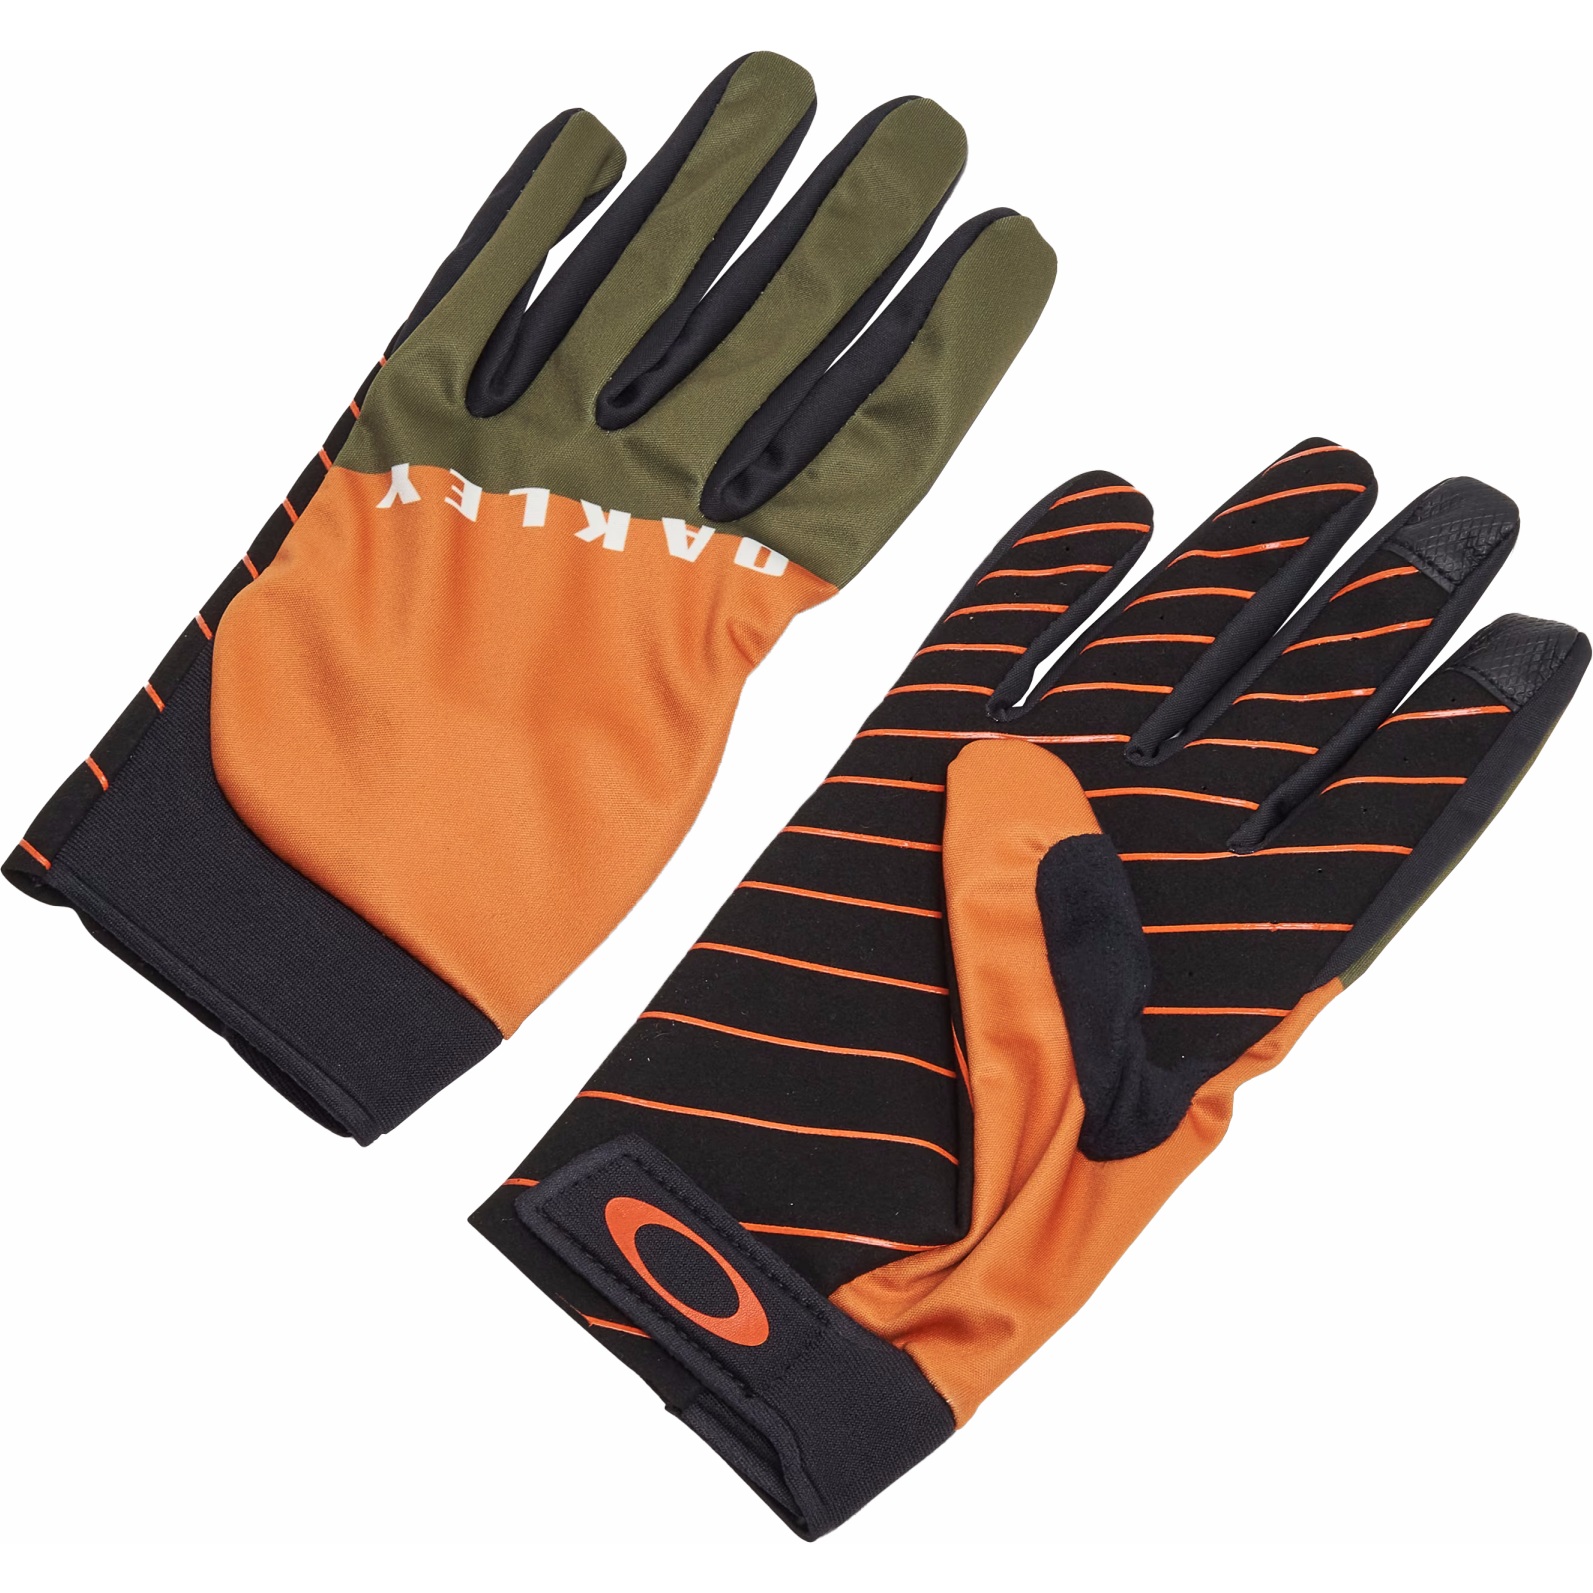 Produktbild von Oakley Icon Classic Road Handschuhe - New Dark Brush/Orange